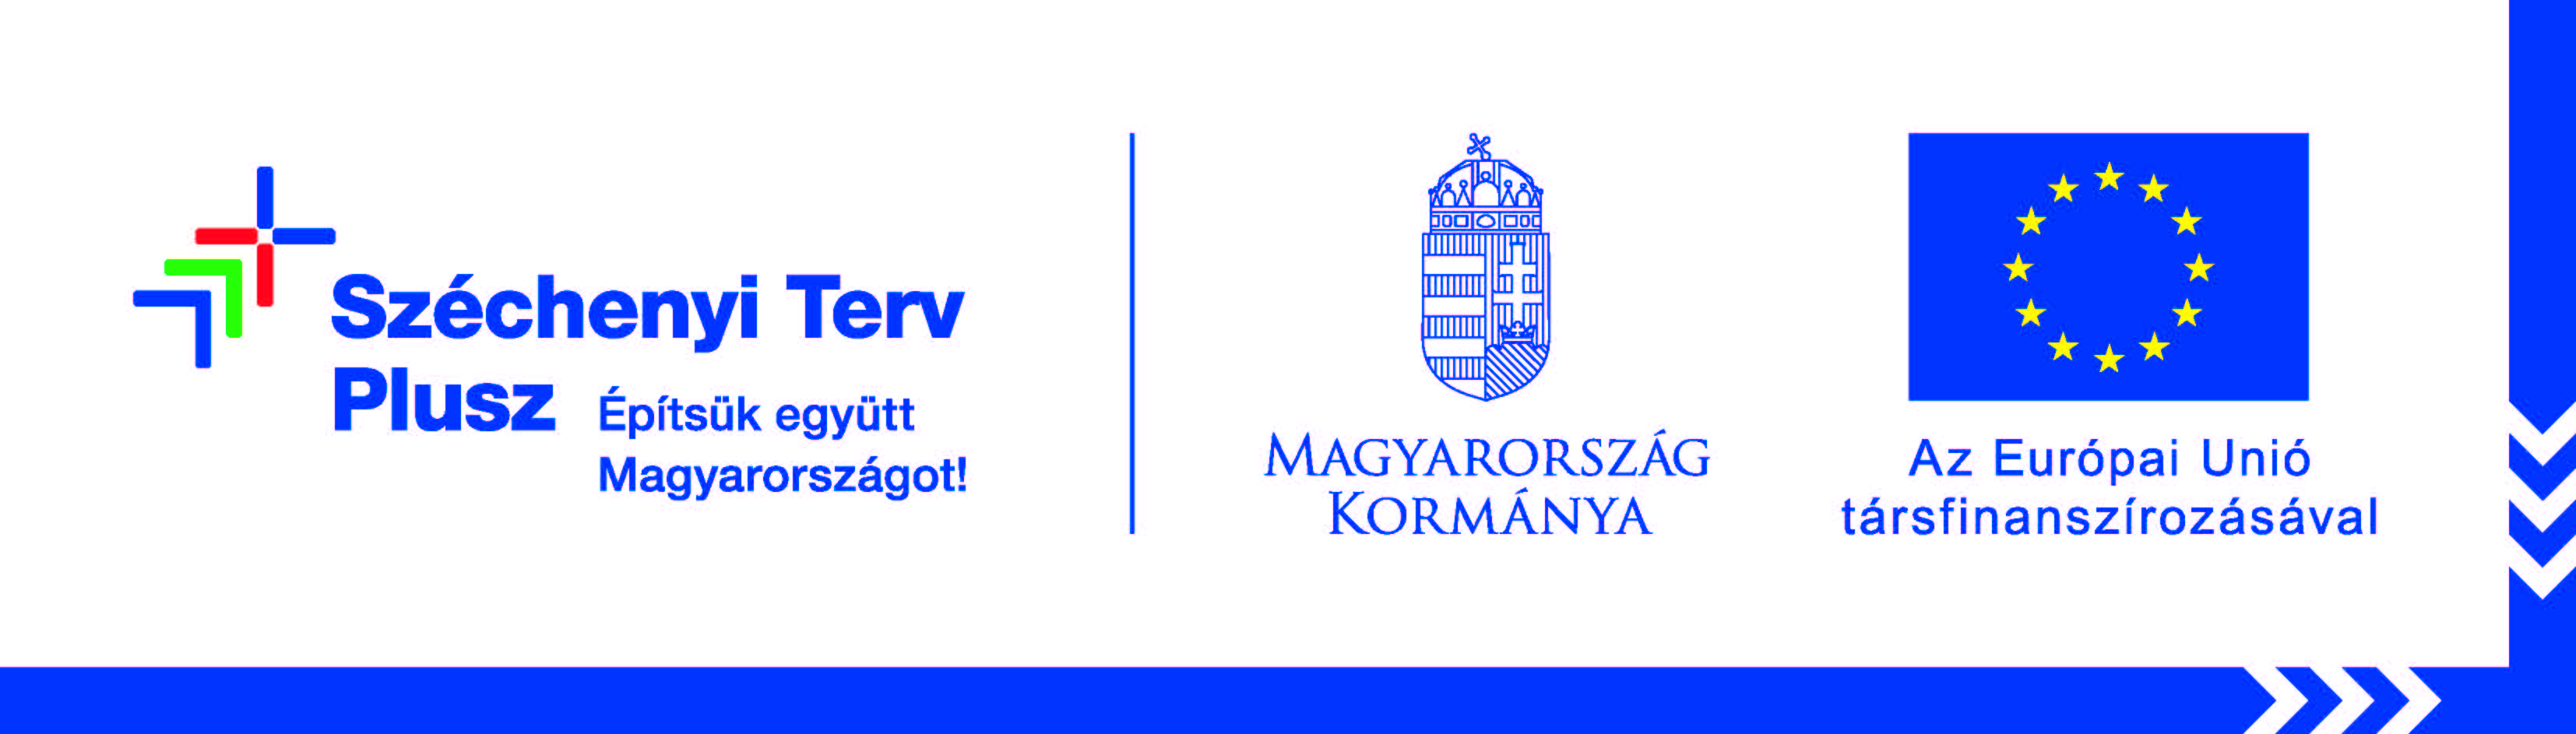 Széchenyi terv plusz építsük együtt Magyarországot! Magyarország kormánya és az Európai Unió társfinanszírozásával.